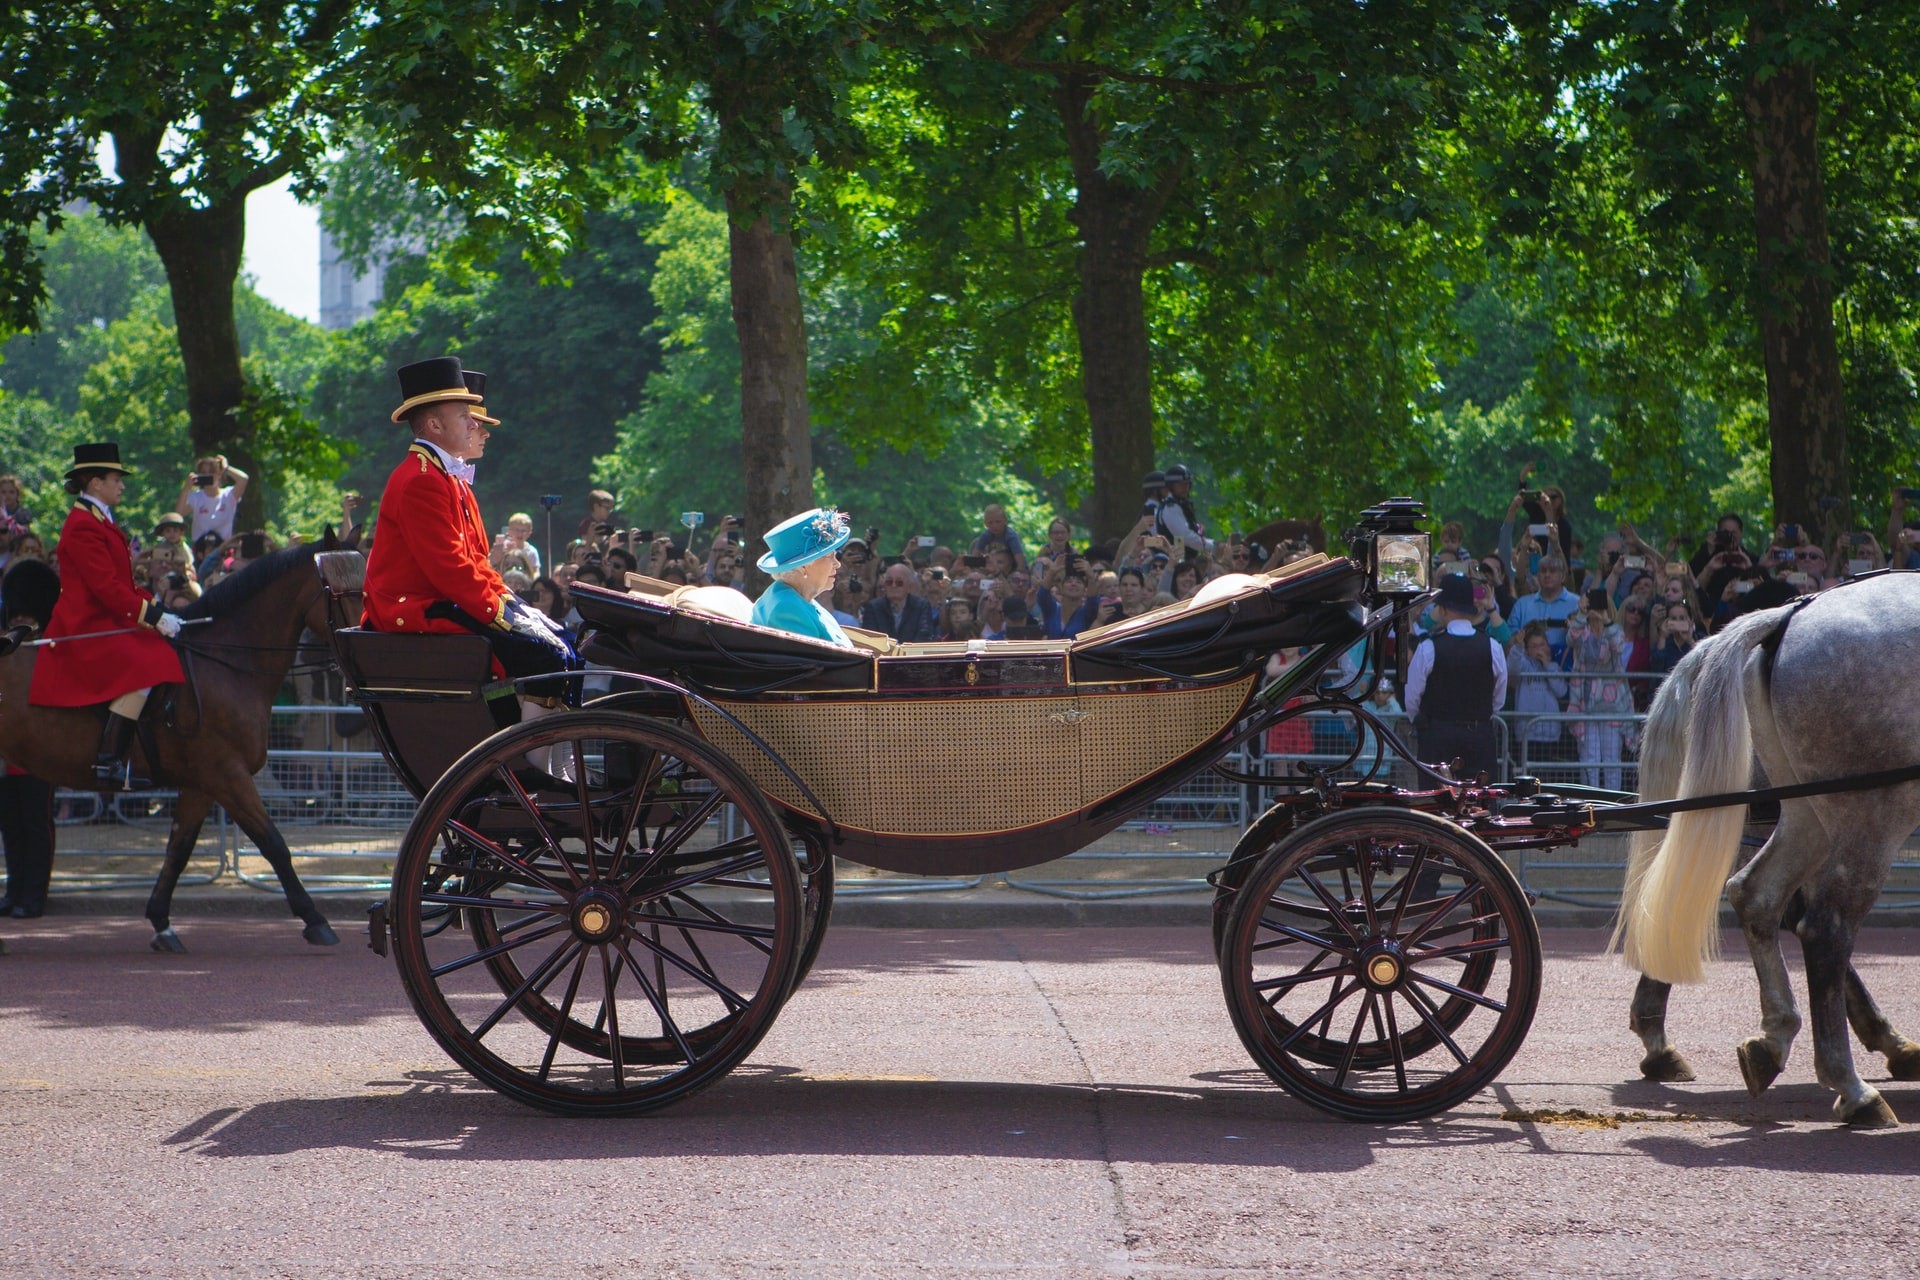 Rainha Elizabeth II tem o terceiro reinado mais longo da história; veja os outros (Foto: Mark de Jong/ Unsplash)